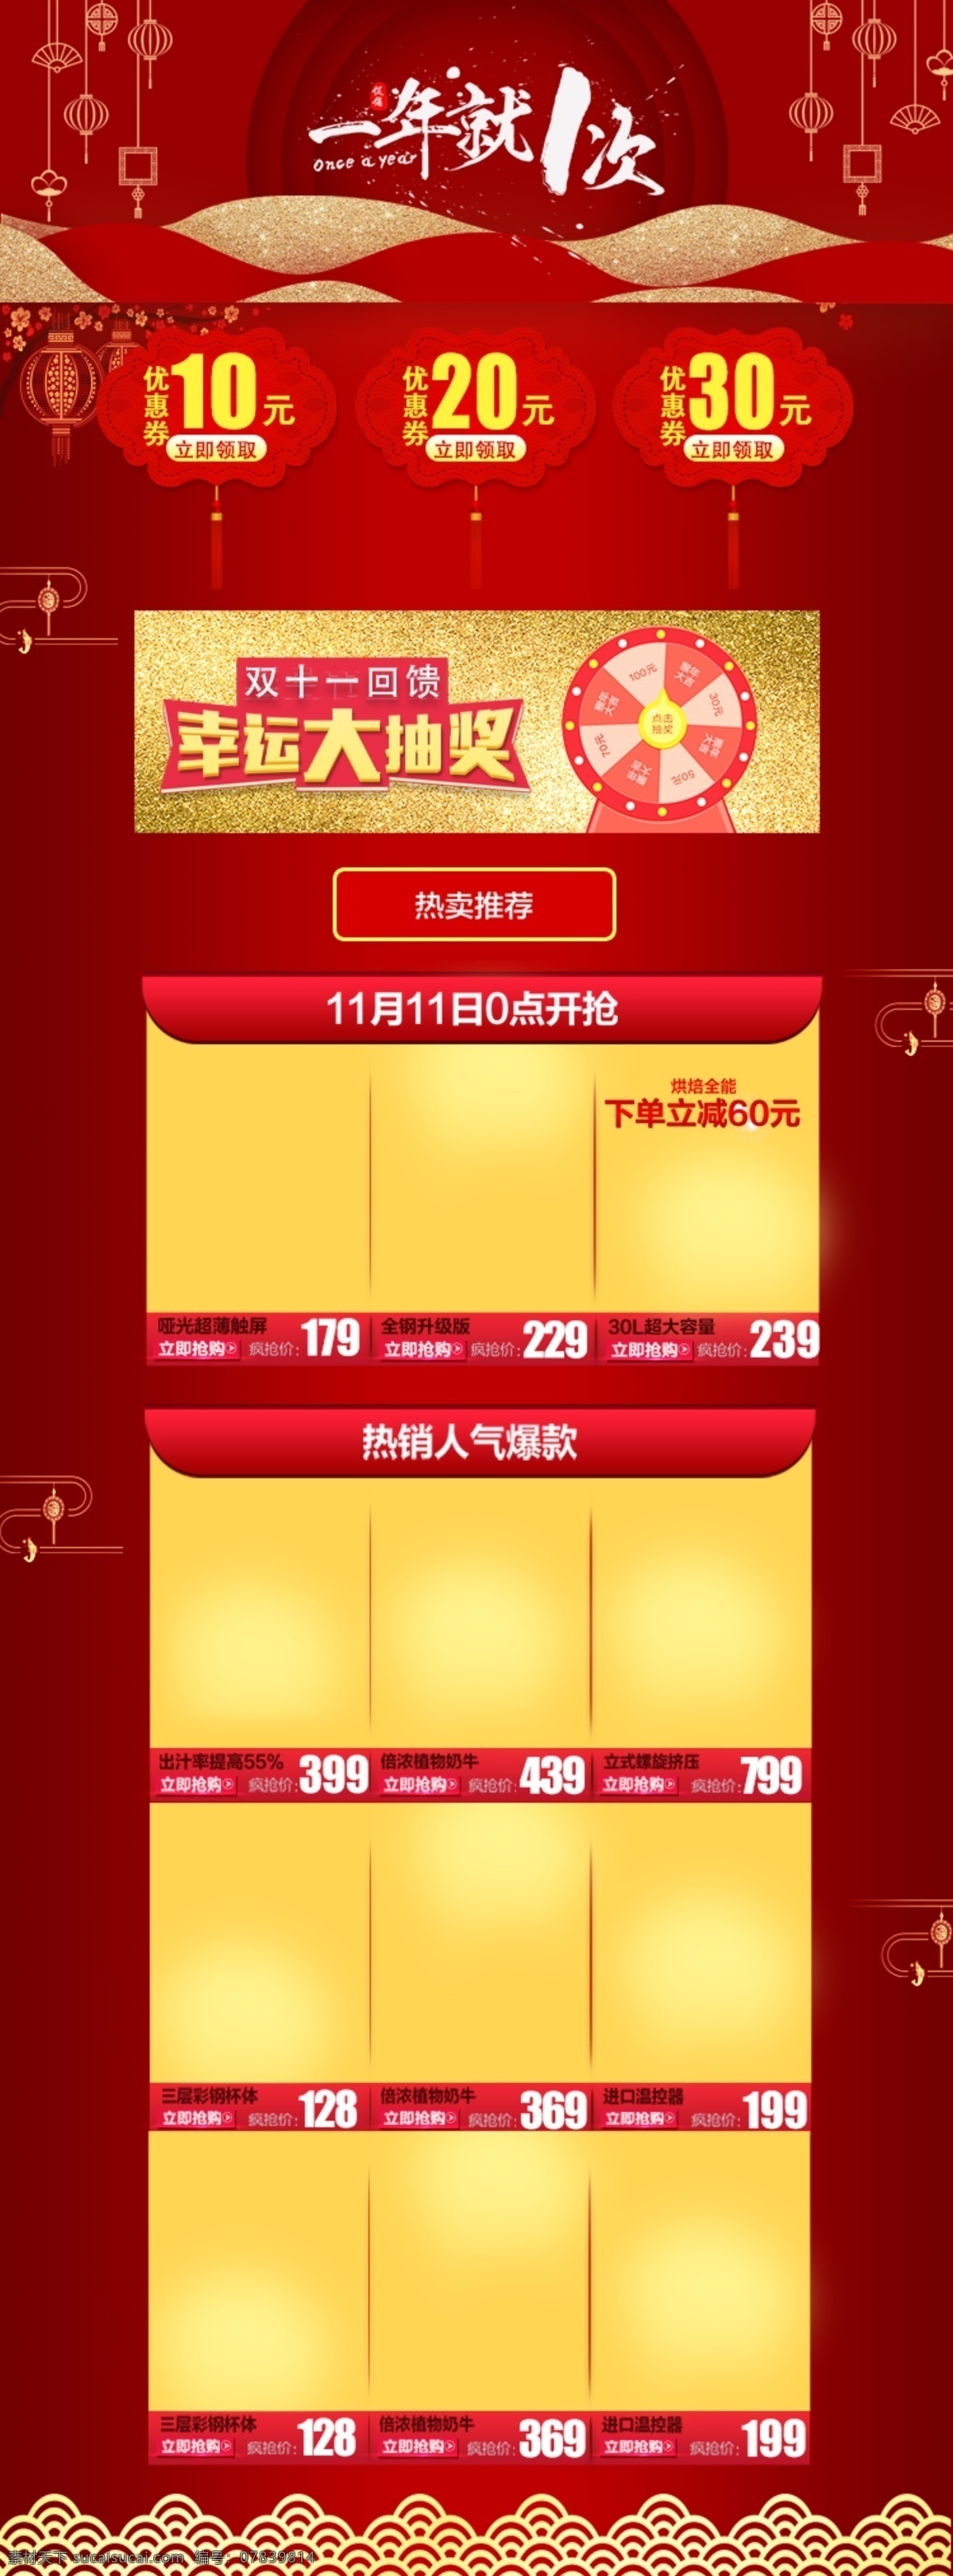 双十 一红 色系 中国 风 电商 首页 模板 双十一 红色 中国风 淘宝 天猫 京东 购物 狂欢